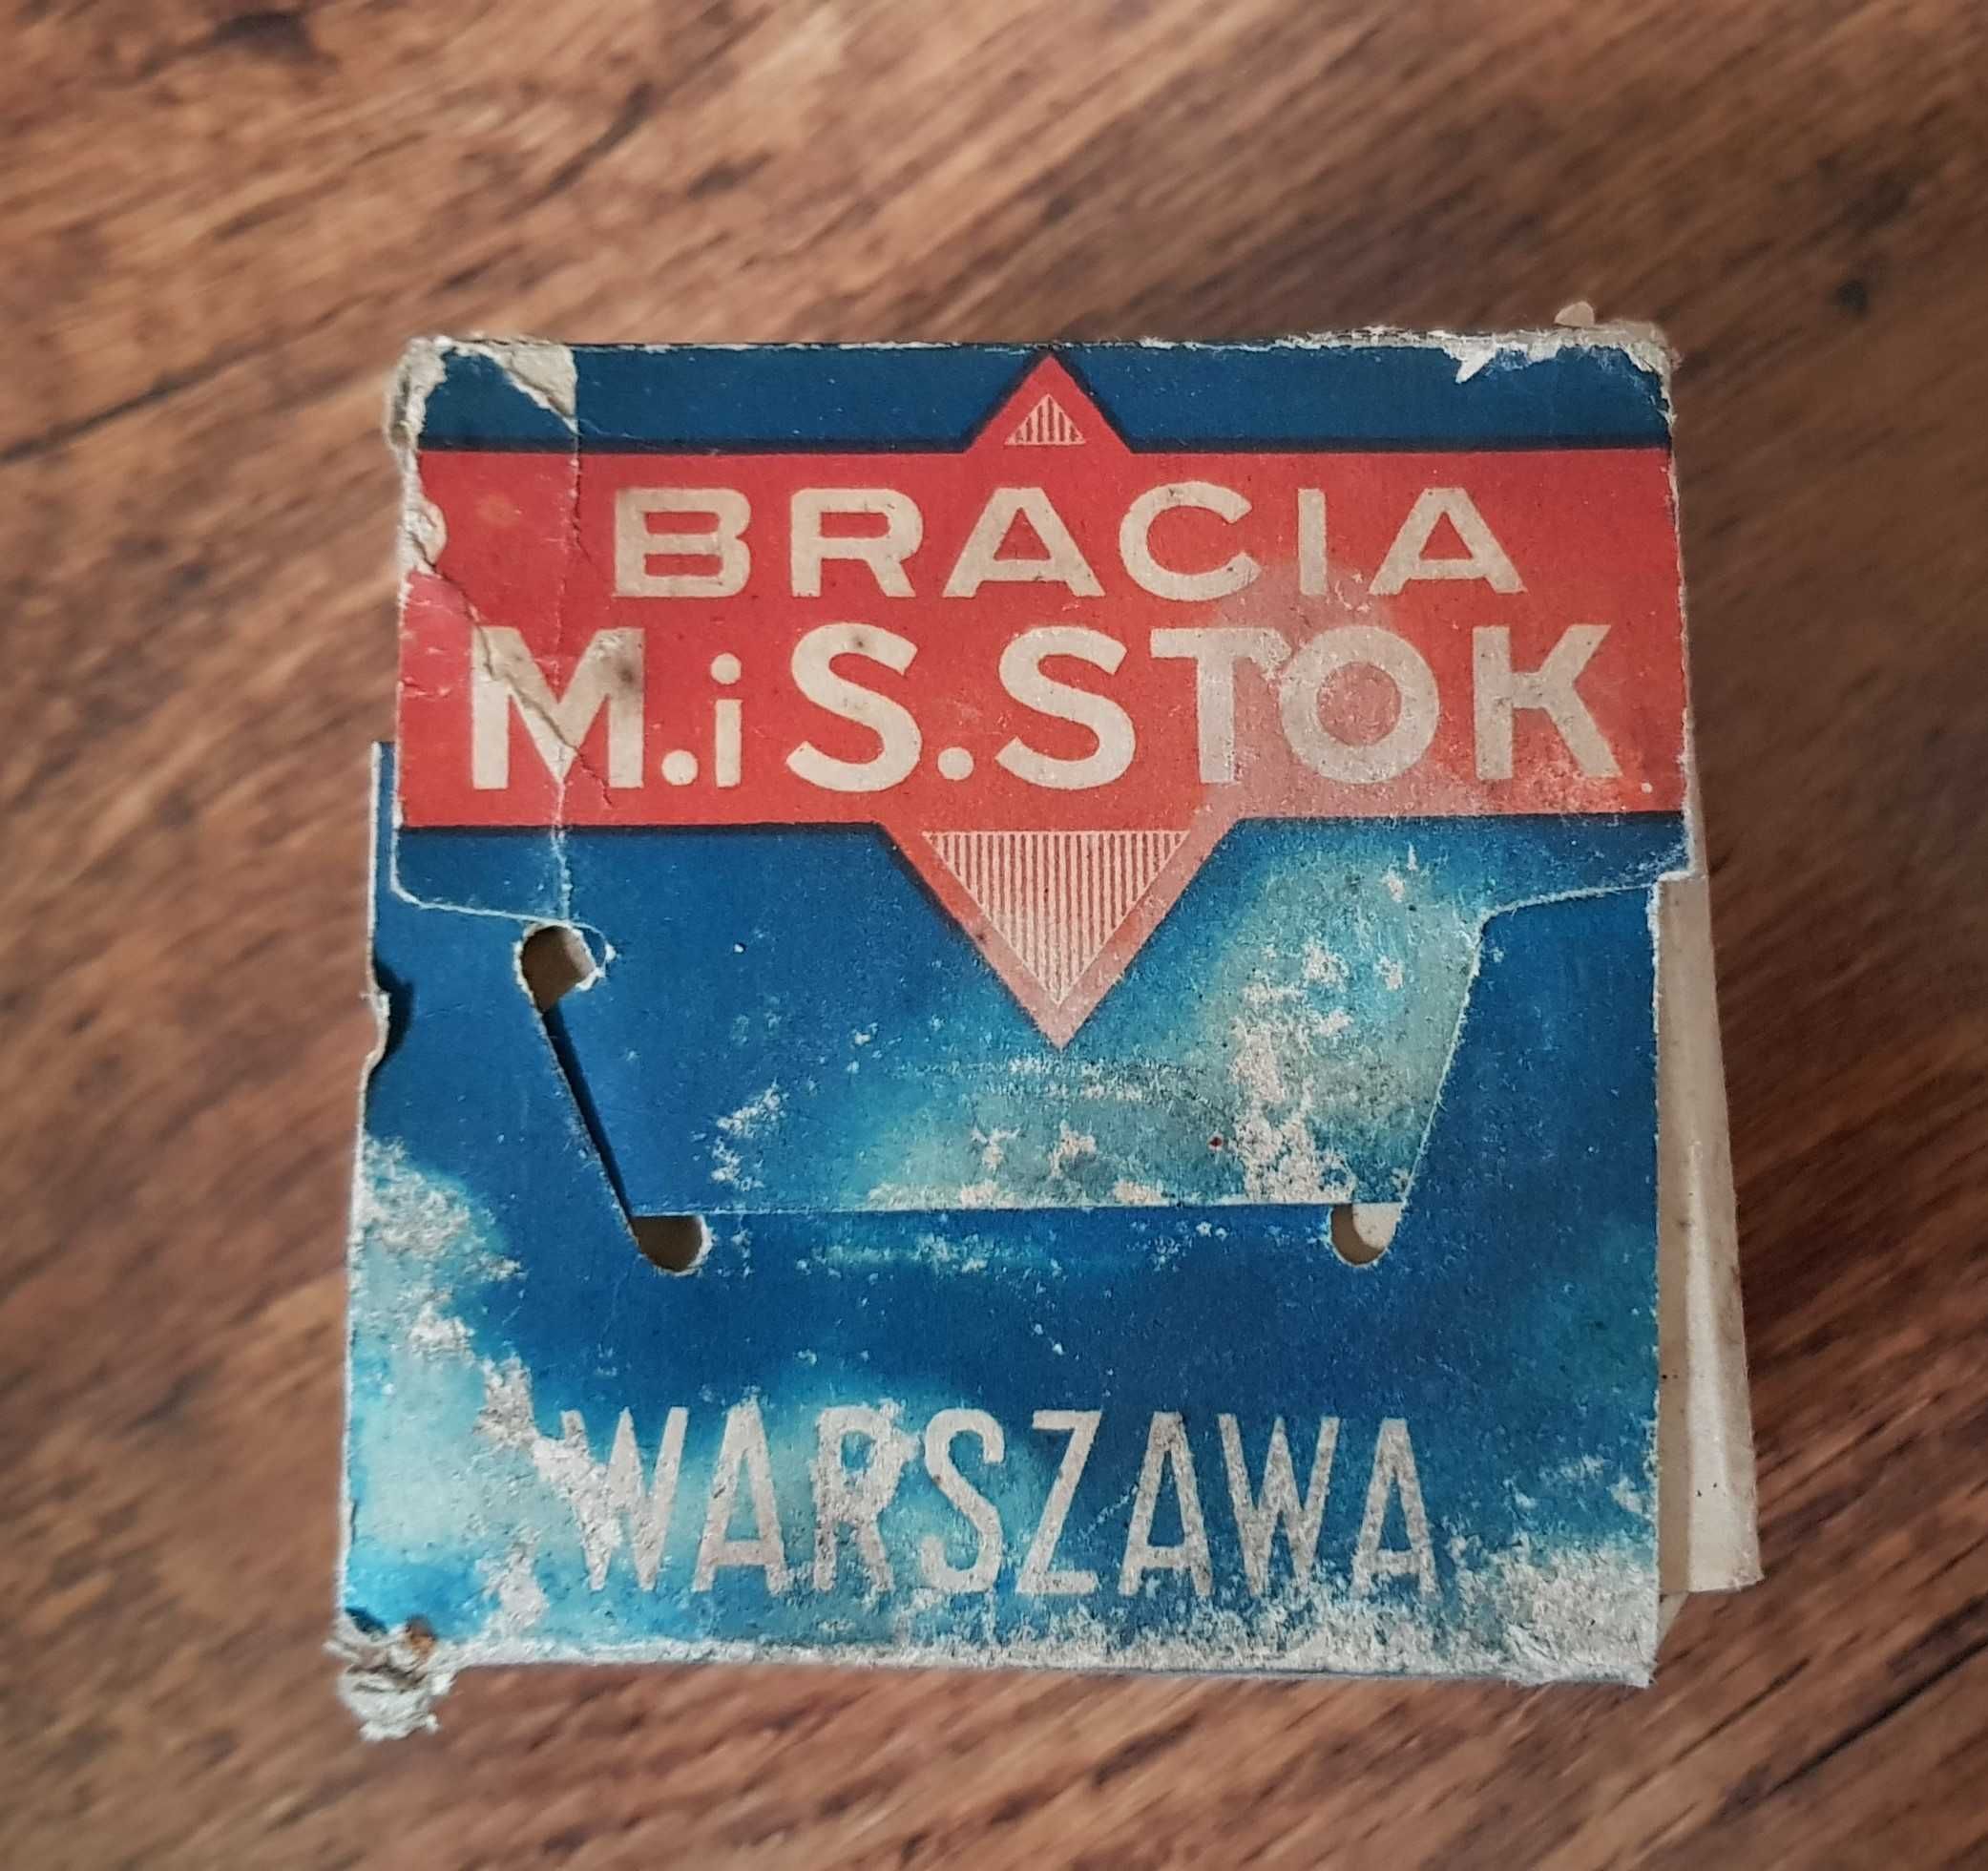 Kostka przedwojennego mydła Bracia M. i S. Stok, Warszawa